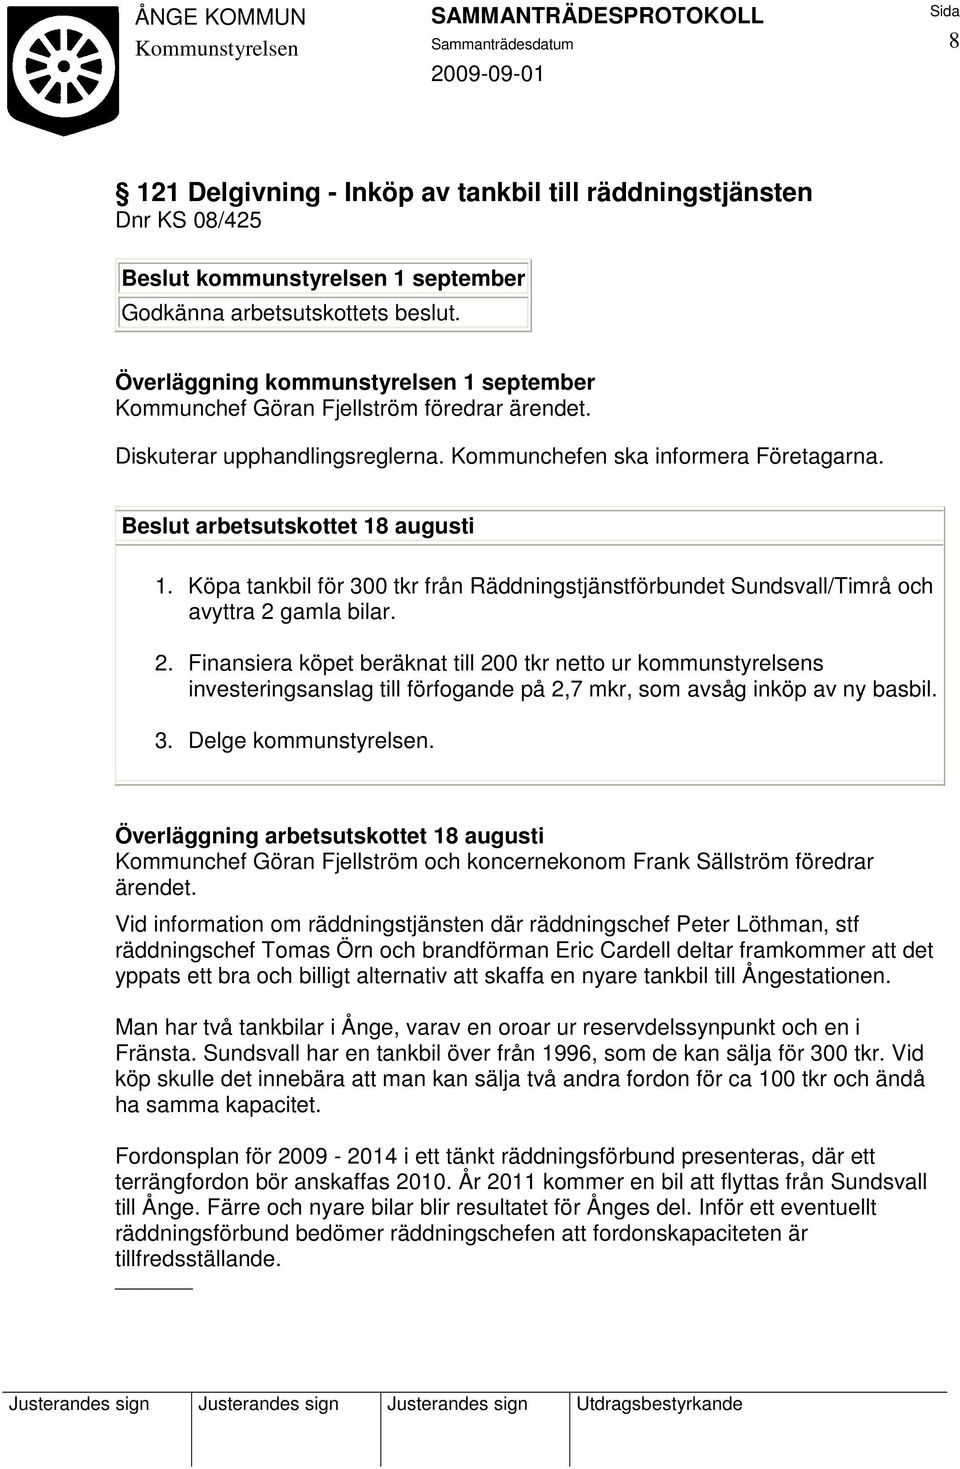 Köpa tankbil för 300 tkr från Räddningstjänstförbundet Sundsvall/Timrå och avyttra 2 